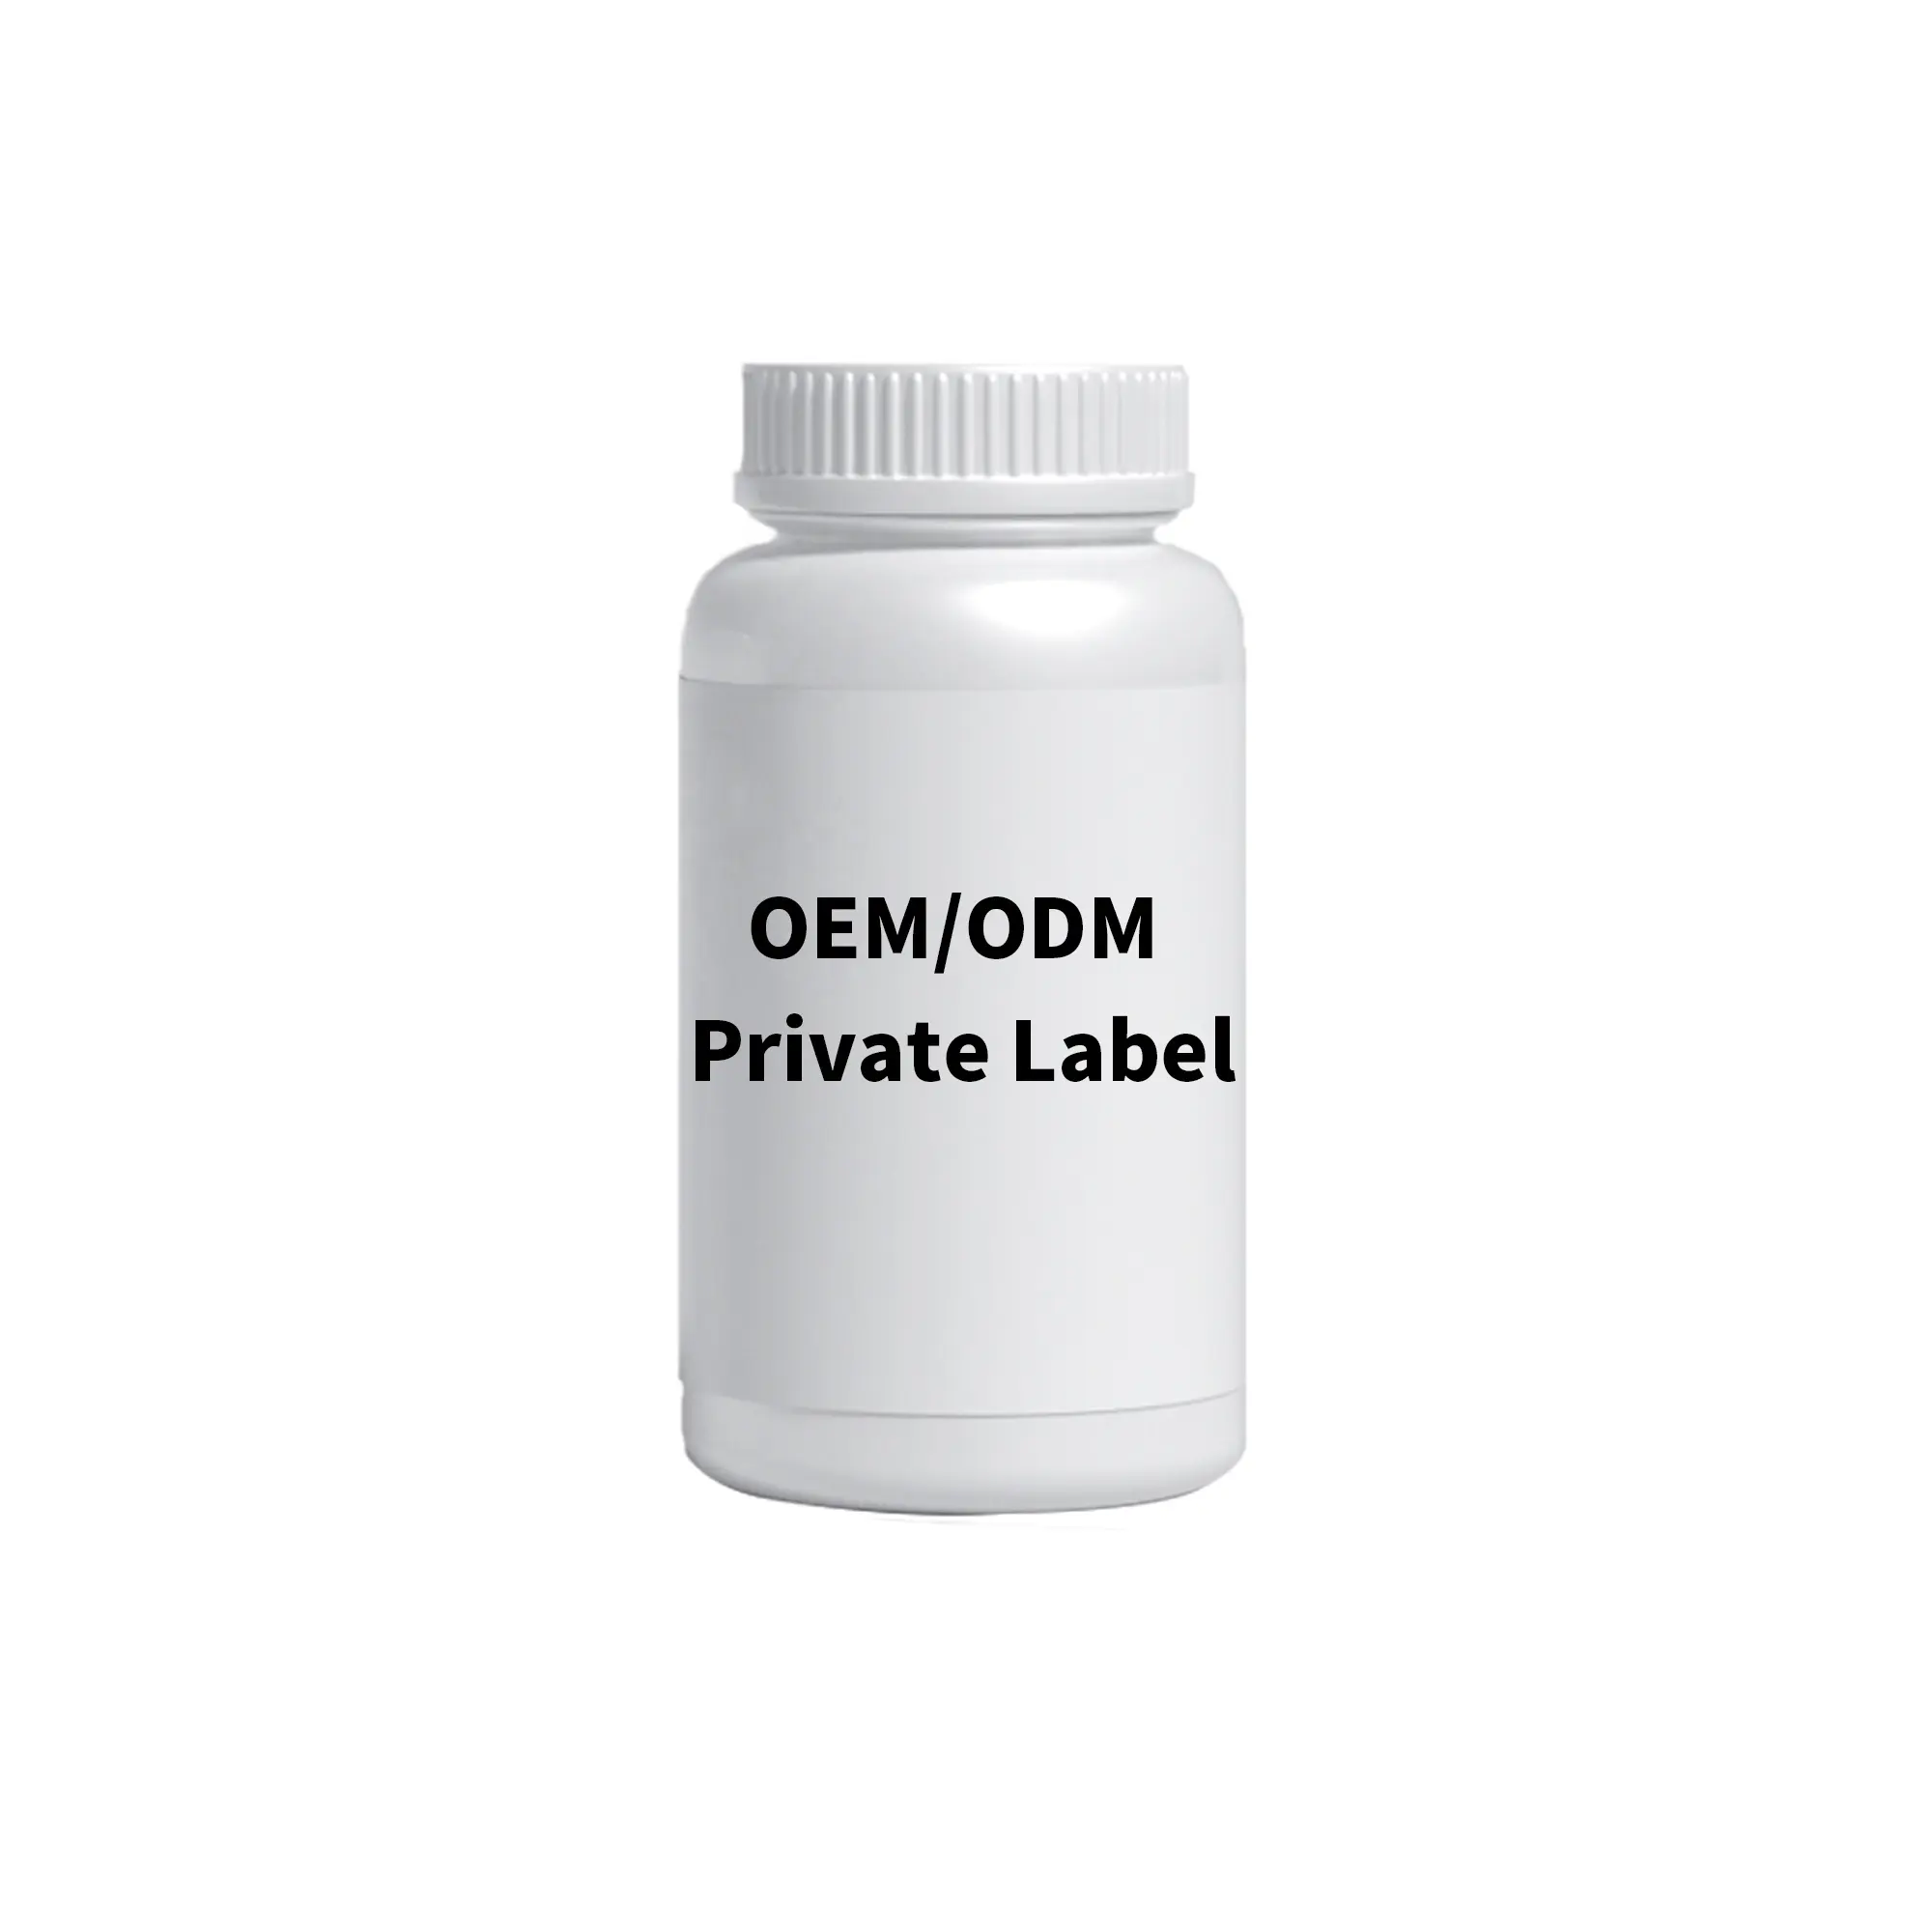 Private Label suplemento Vitamina C Tablets para clareamento da pele 1000mg